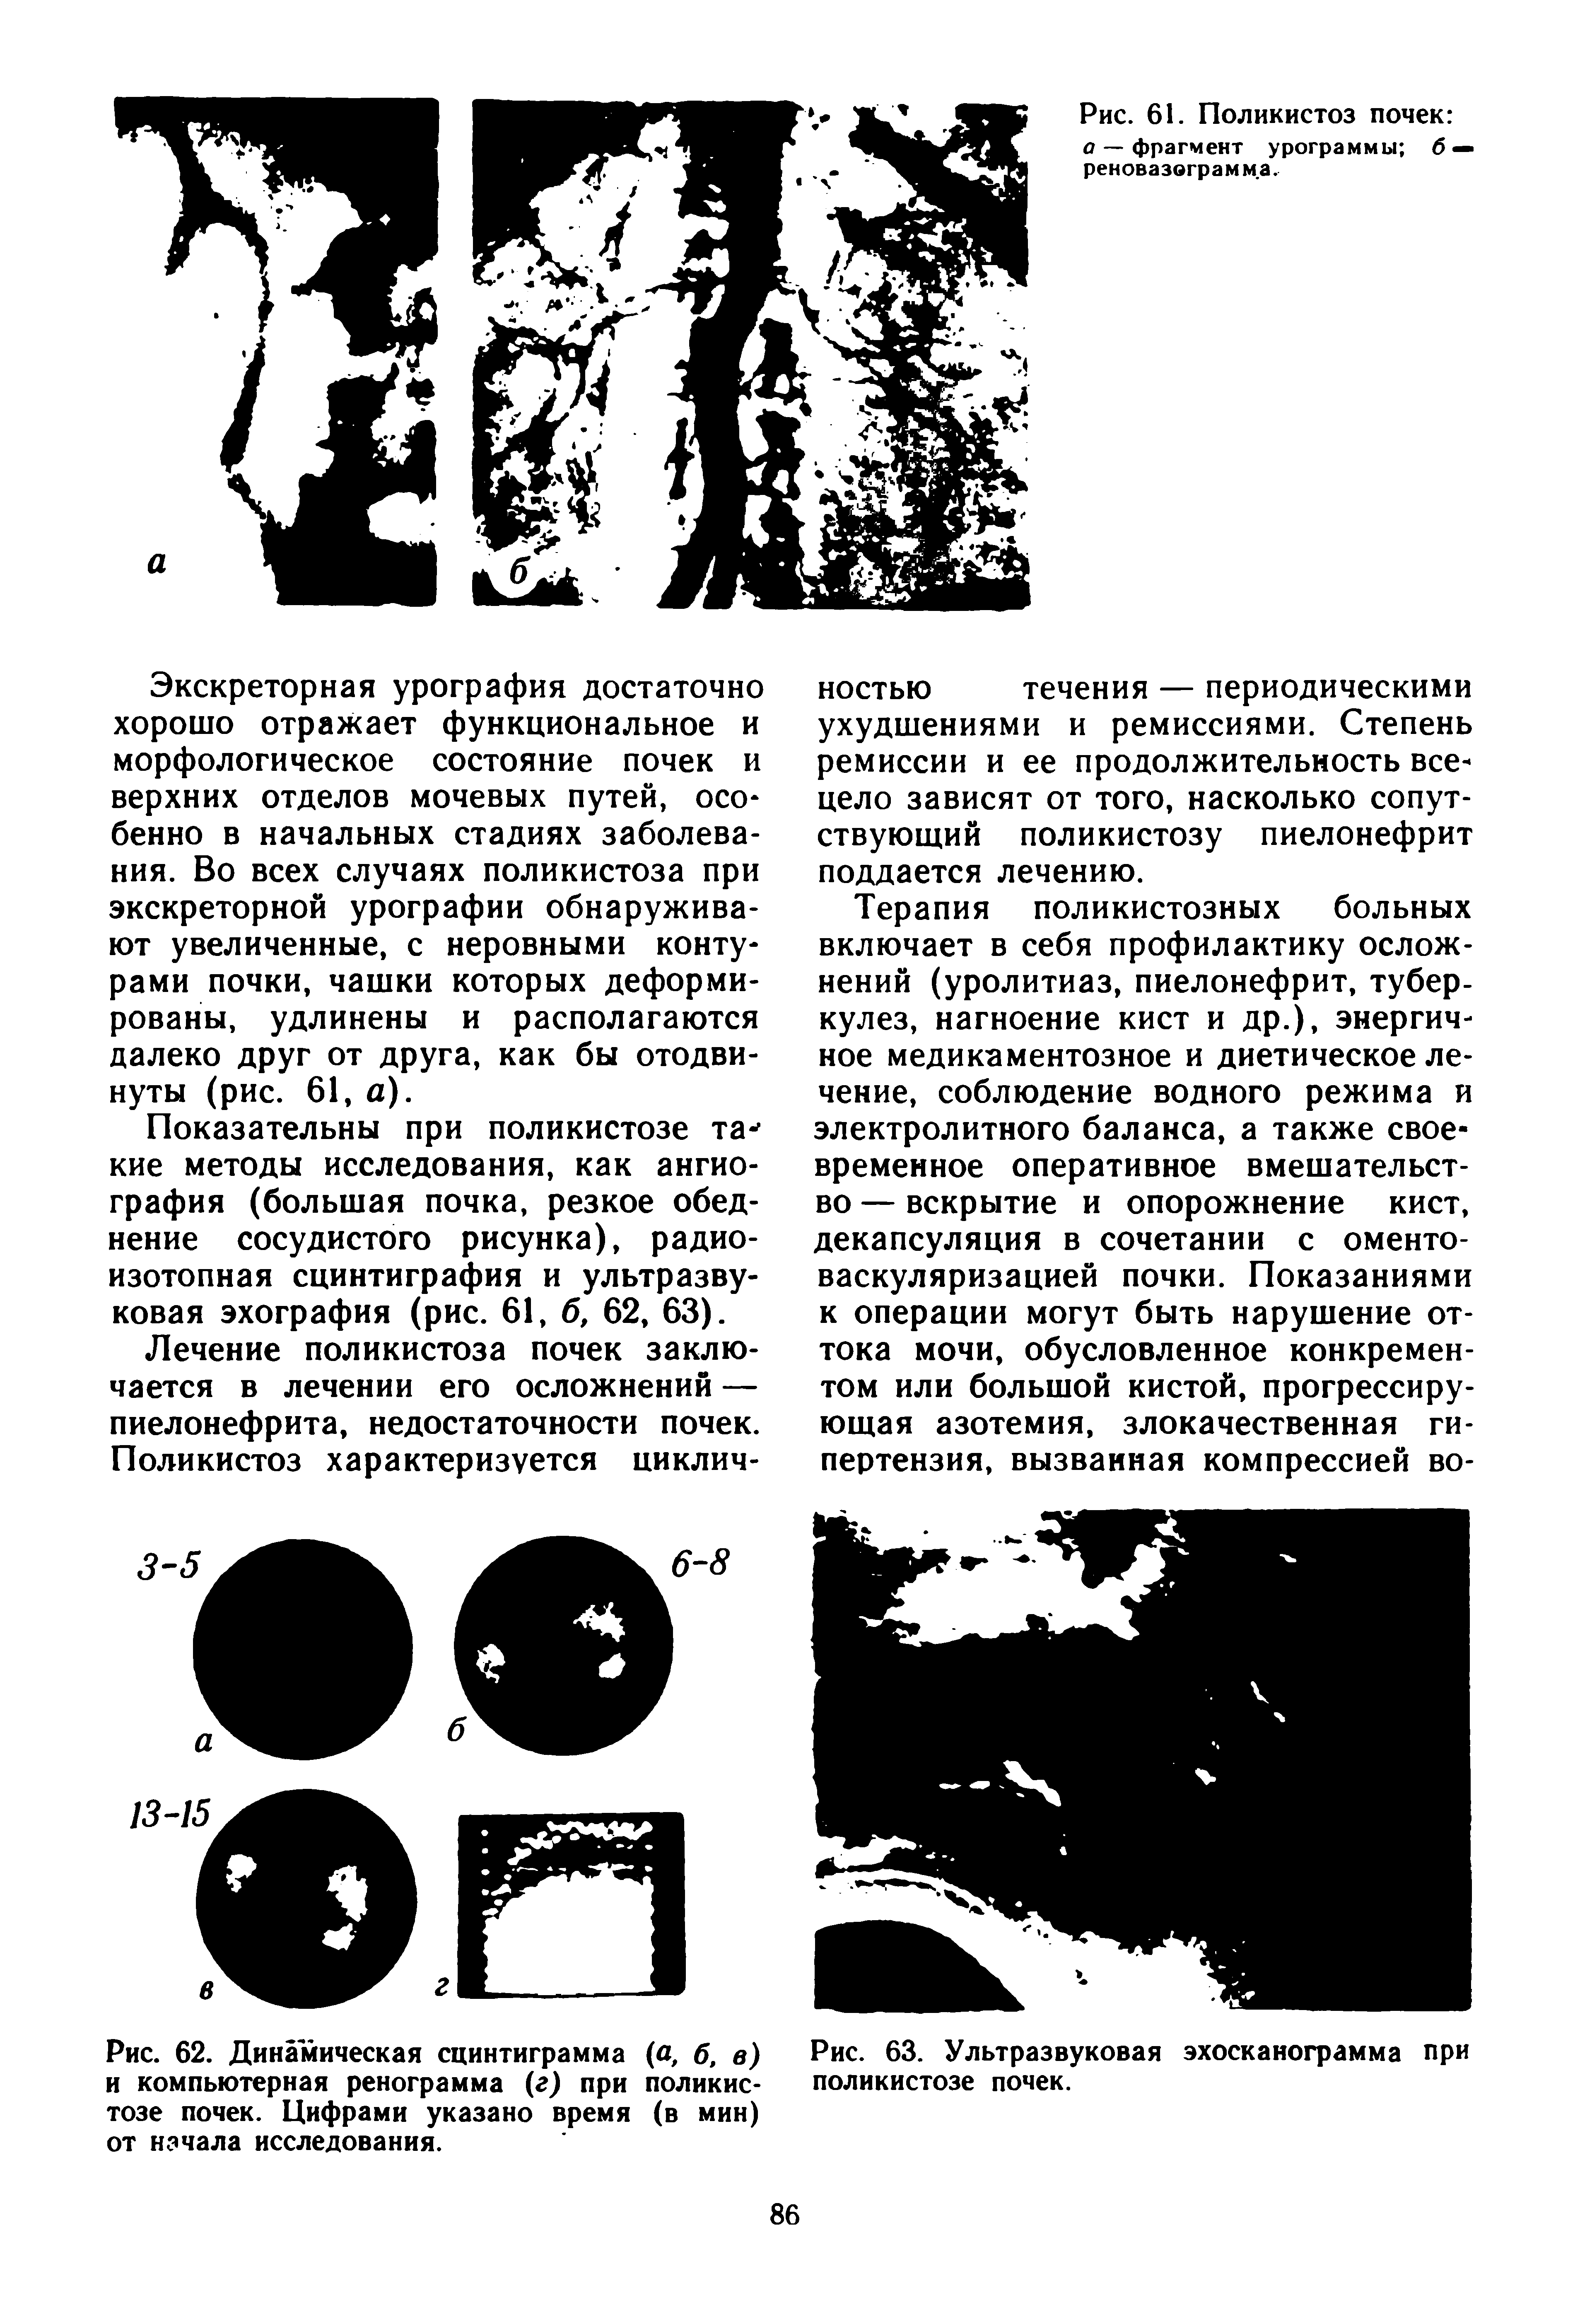 Рис. 62. Динамическая сцинтиграмма (а, б, в) и компьютерная ренограмма (г) при поликистозе почек. Цифрами указано время (в мин) от начала исследования.